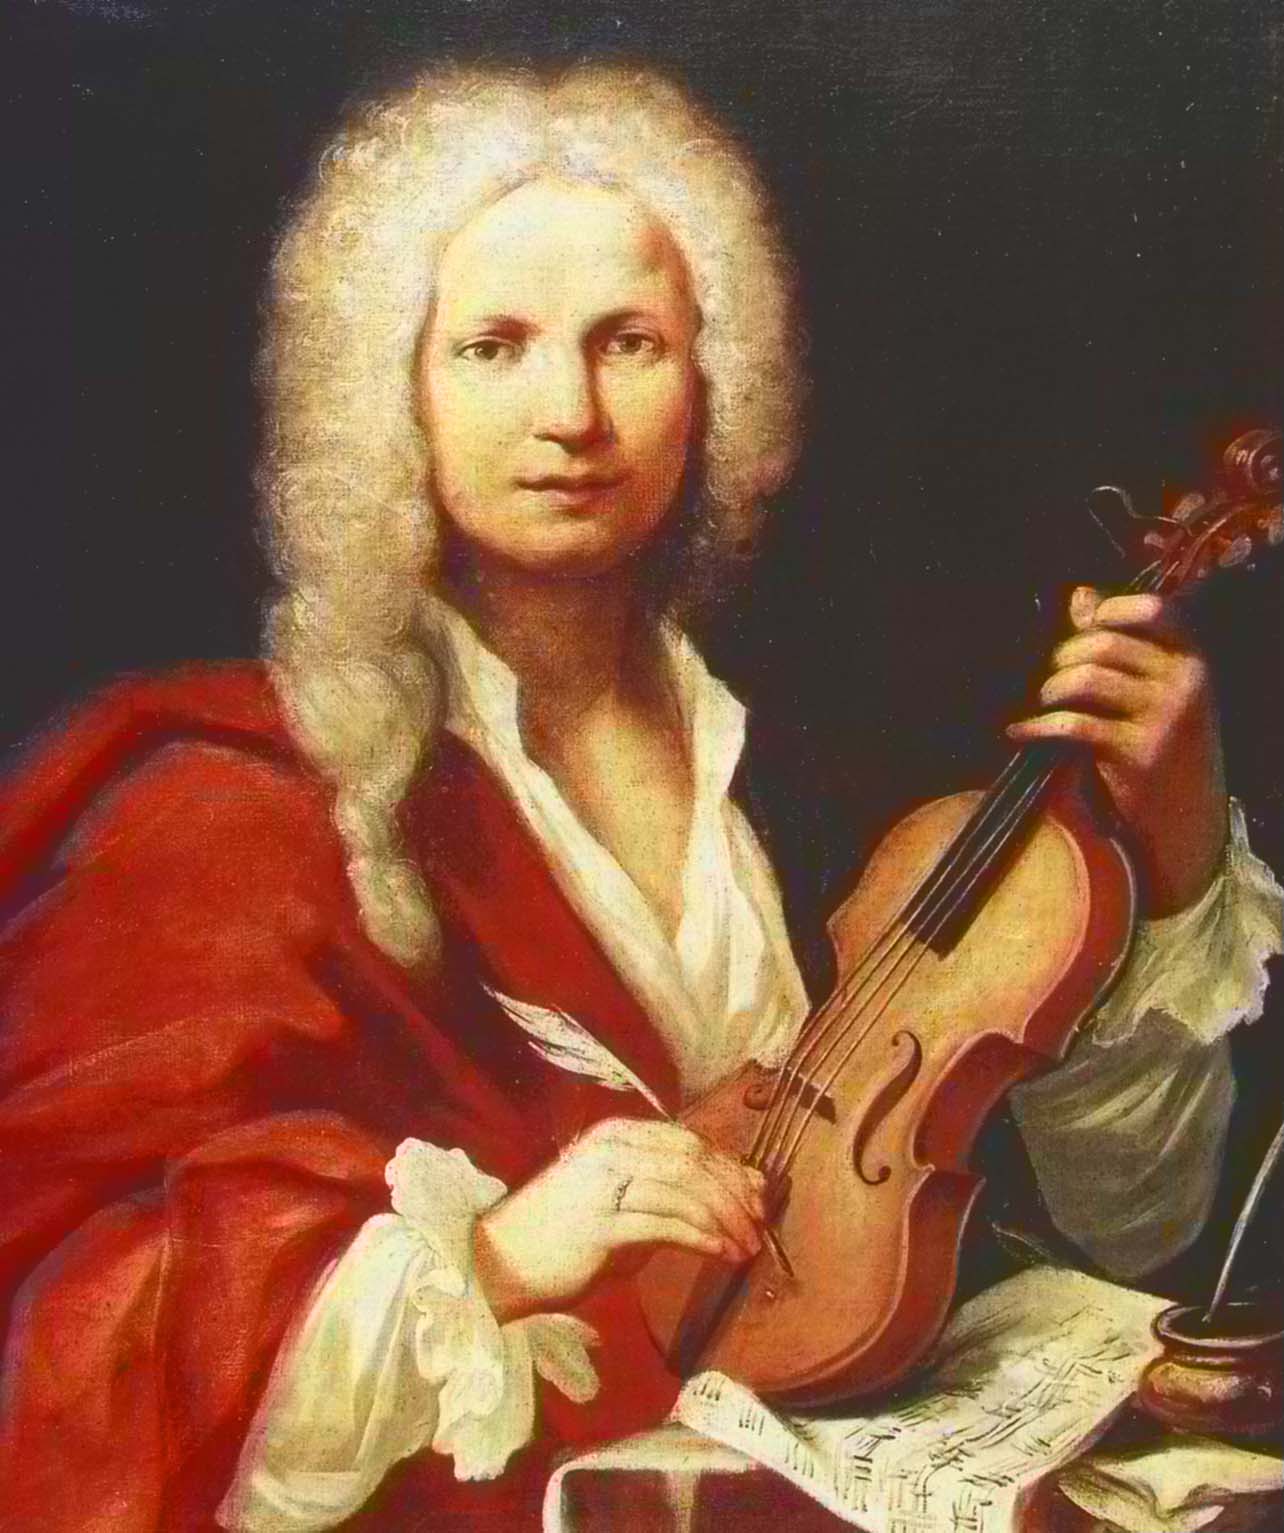 Portrait of Vivaldi